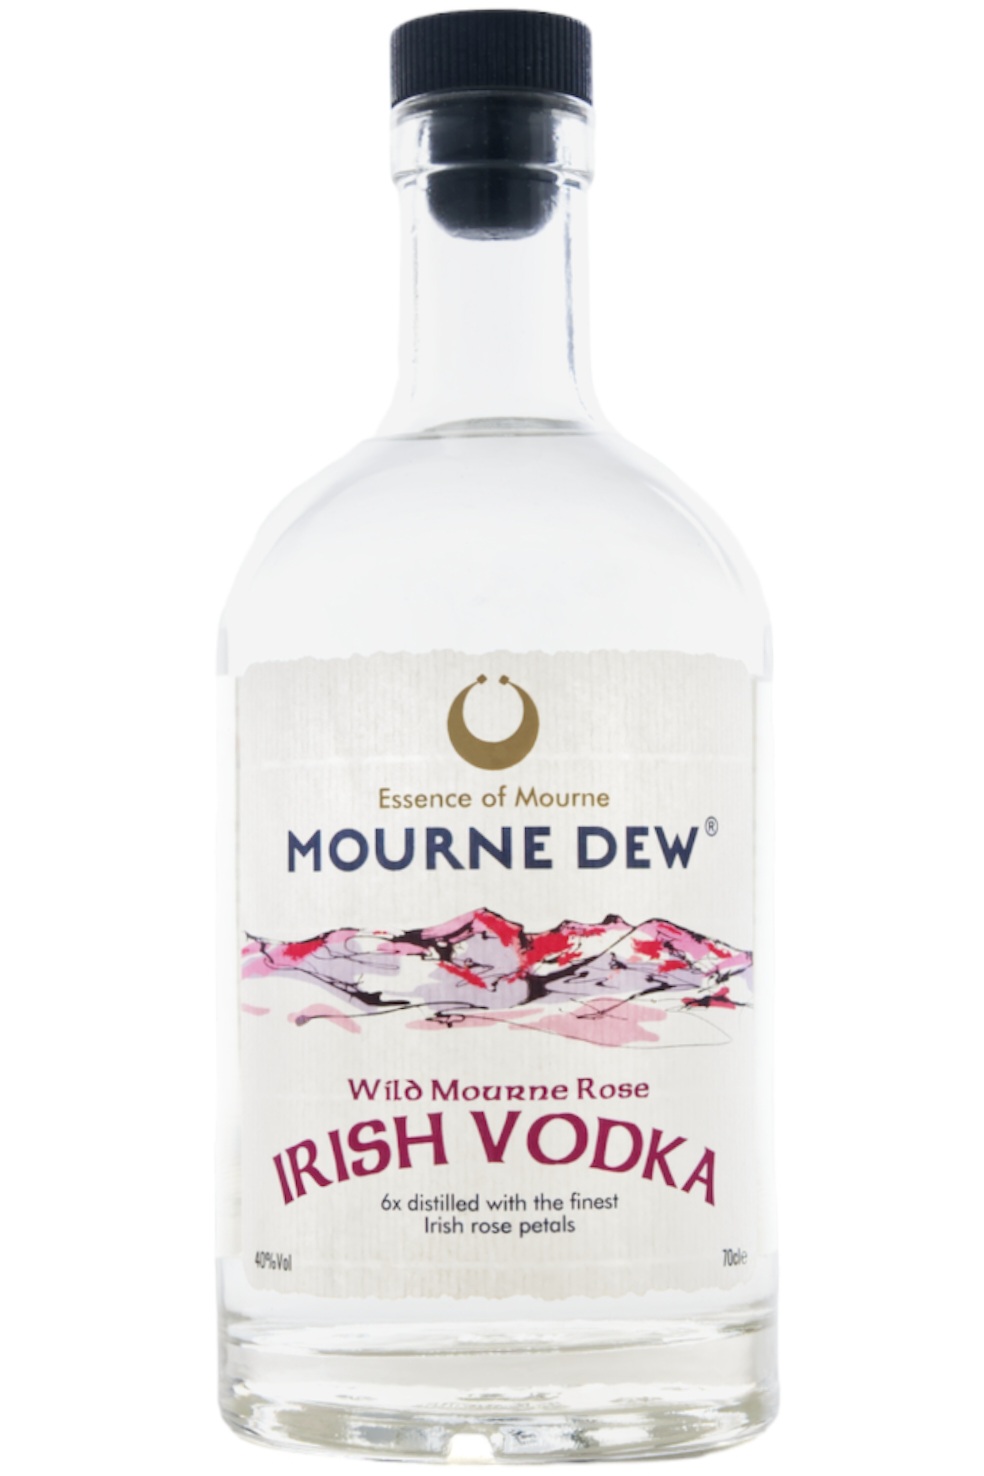 Mourne Dew Wild Tourne Rose Irish Vodka